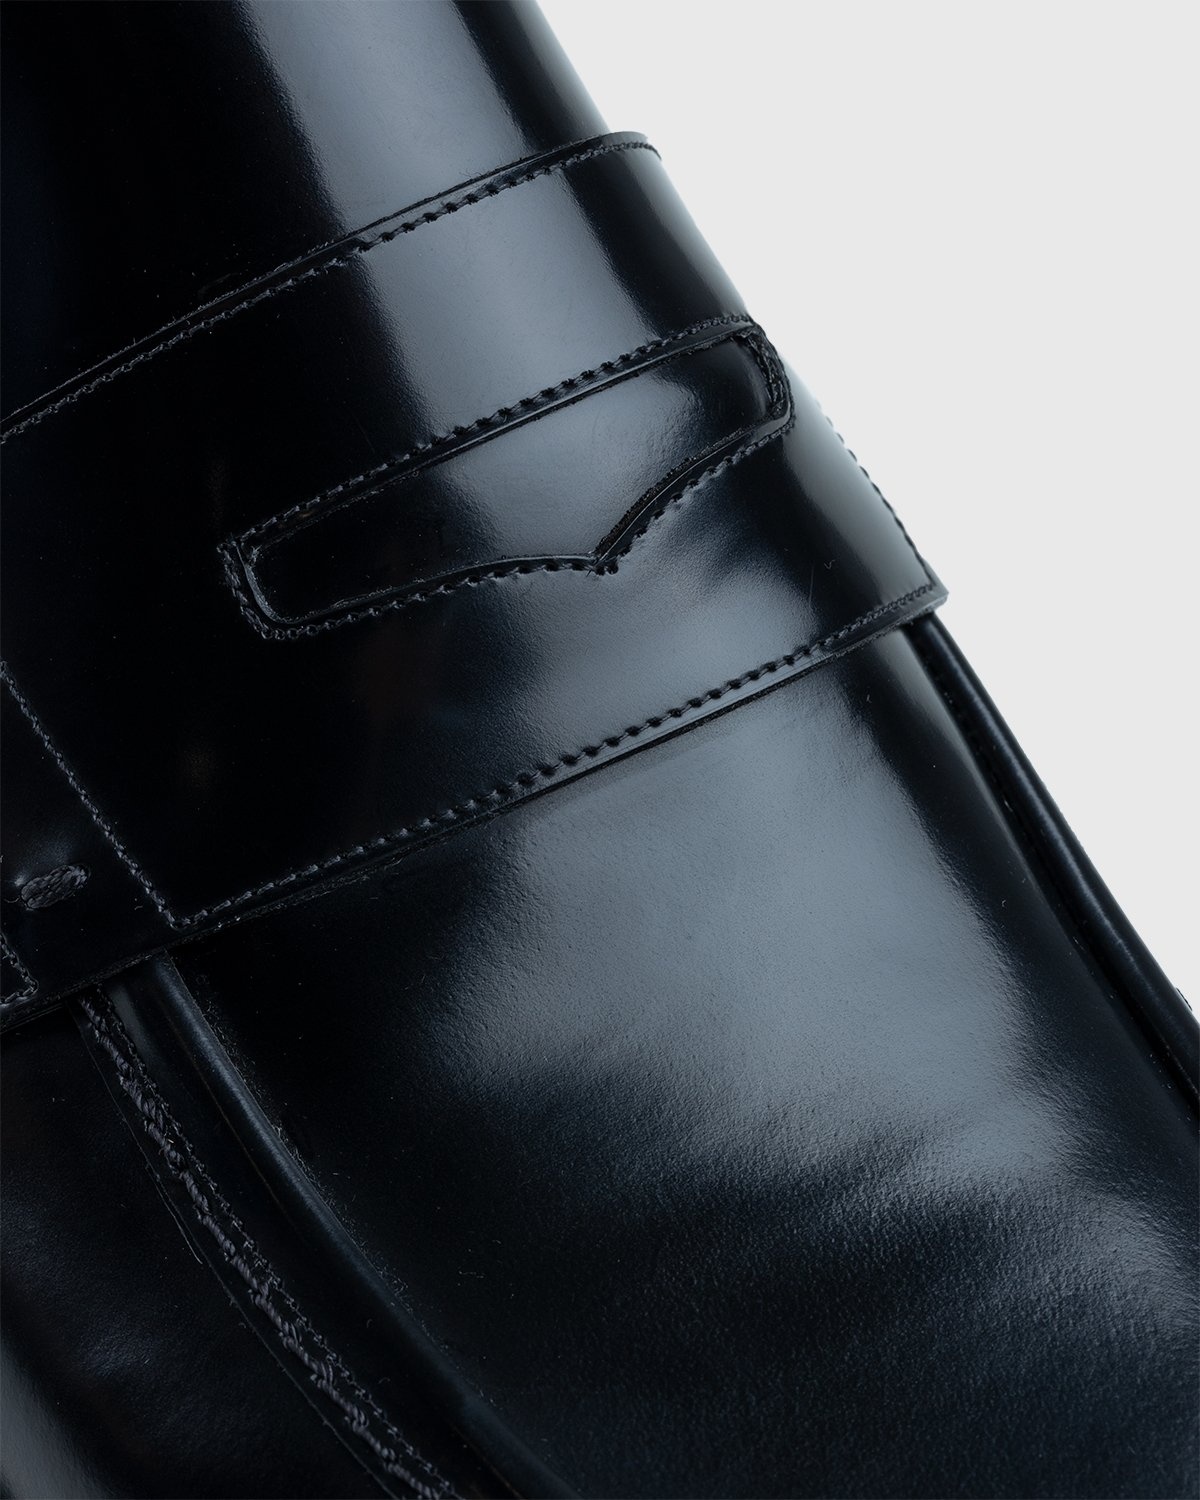 Maison Margiela – Leather Loafers Black - Shoes - Black - Image 4